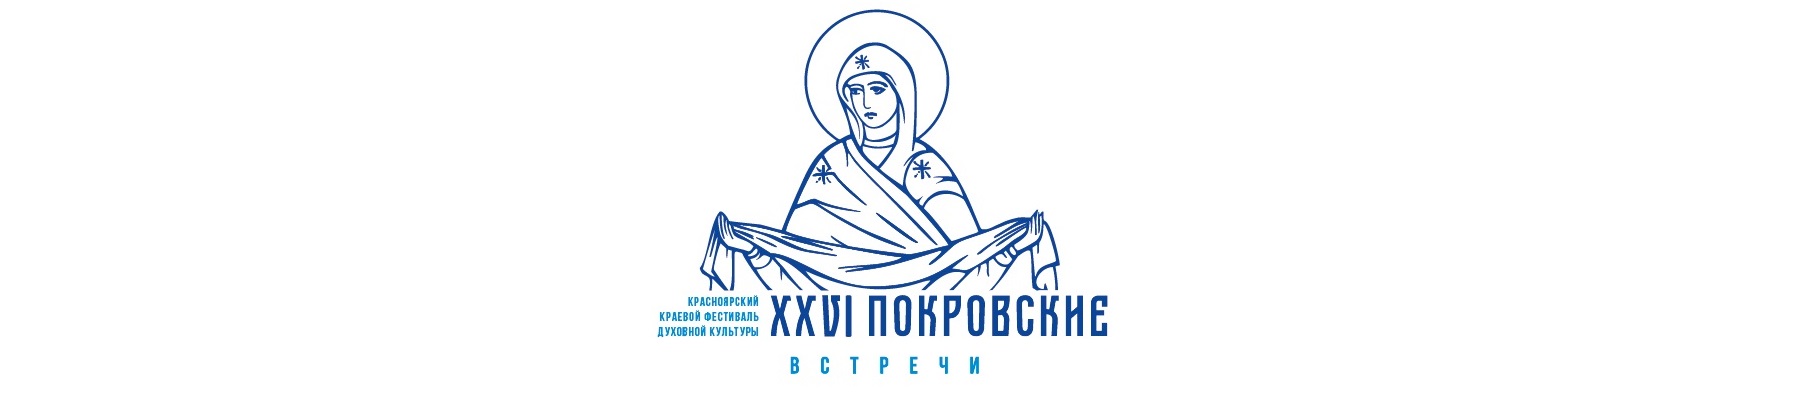 XXVI Красноярский краевой фестиваль духовной культуры «Покровские встречи»